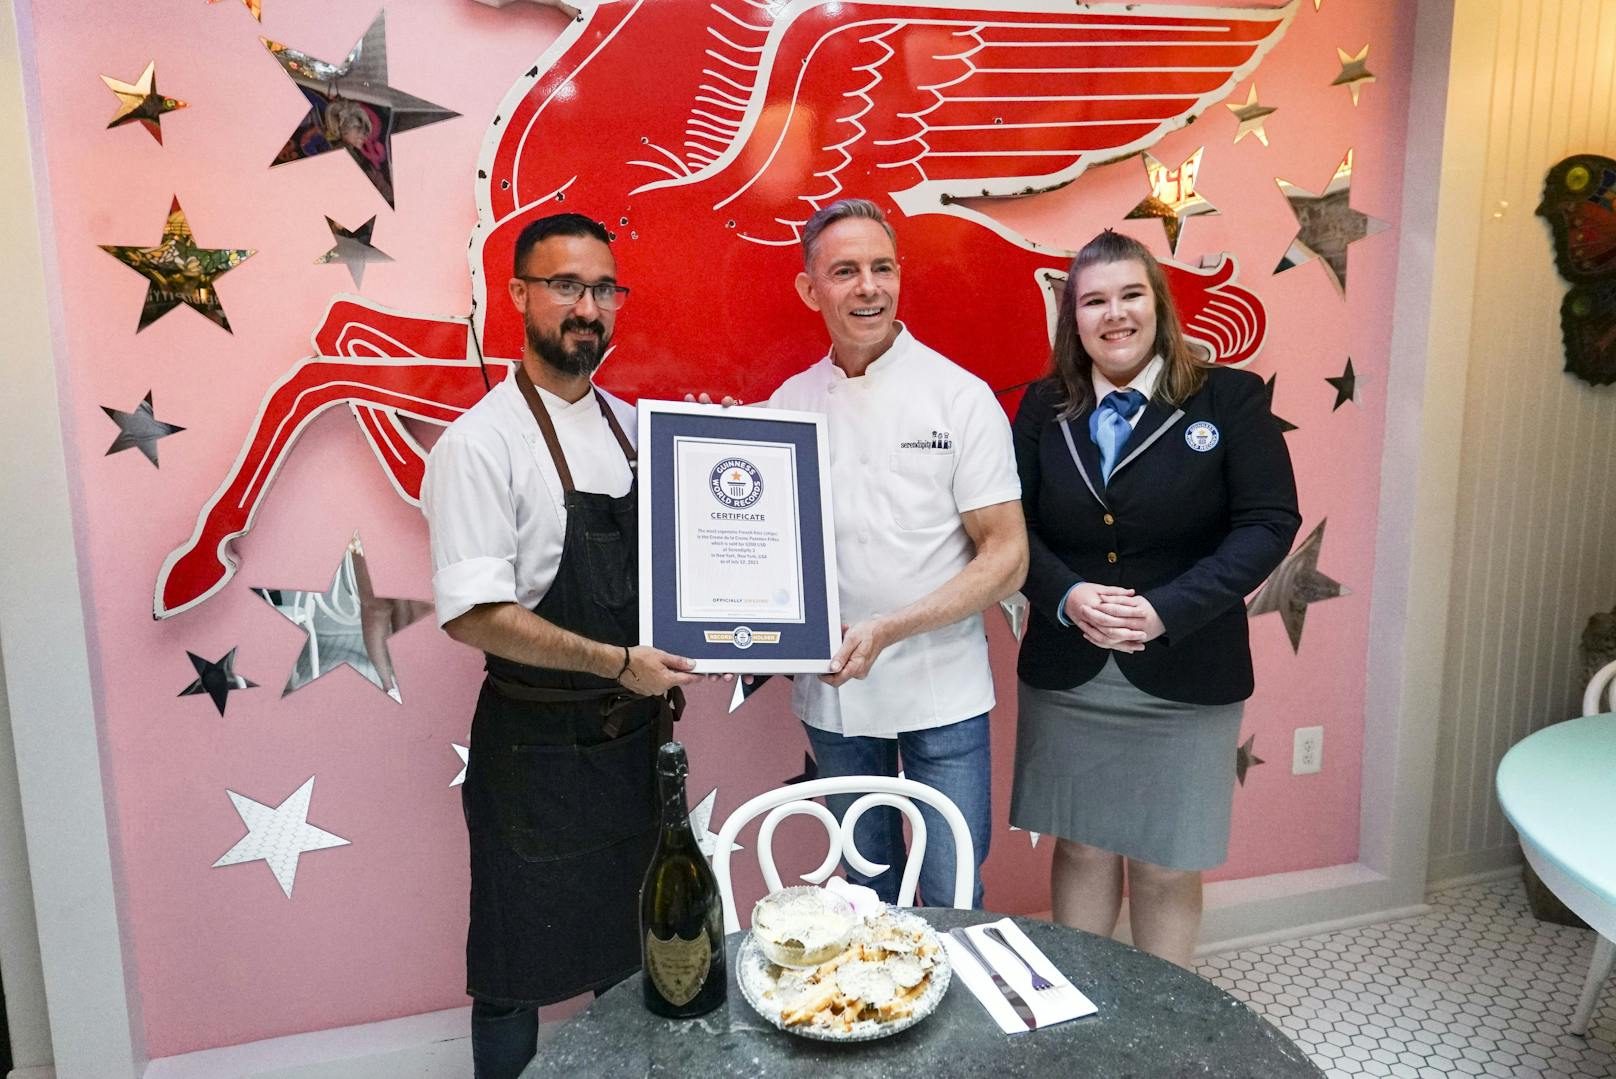 Die Restaurantchefs Joe Calderone und Fredrick Schoen-Kiewert wurden dafür vom Guinness-Buch der Rekorde geehrt.